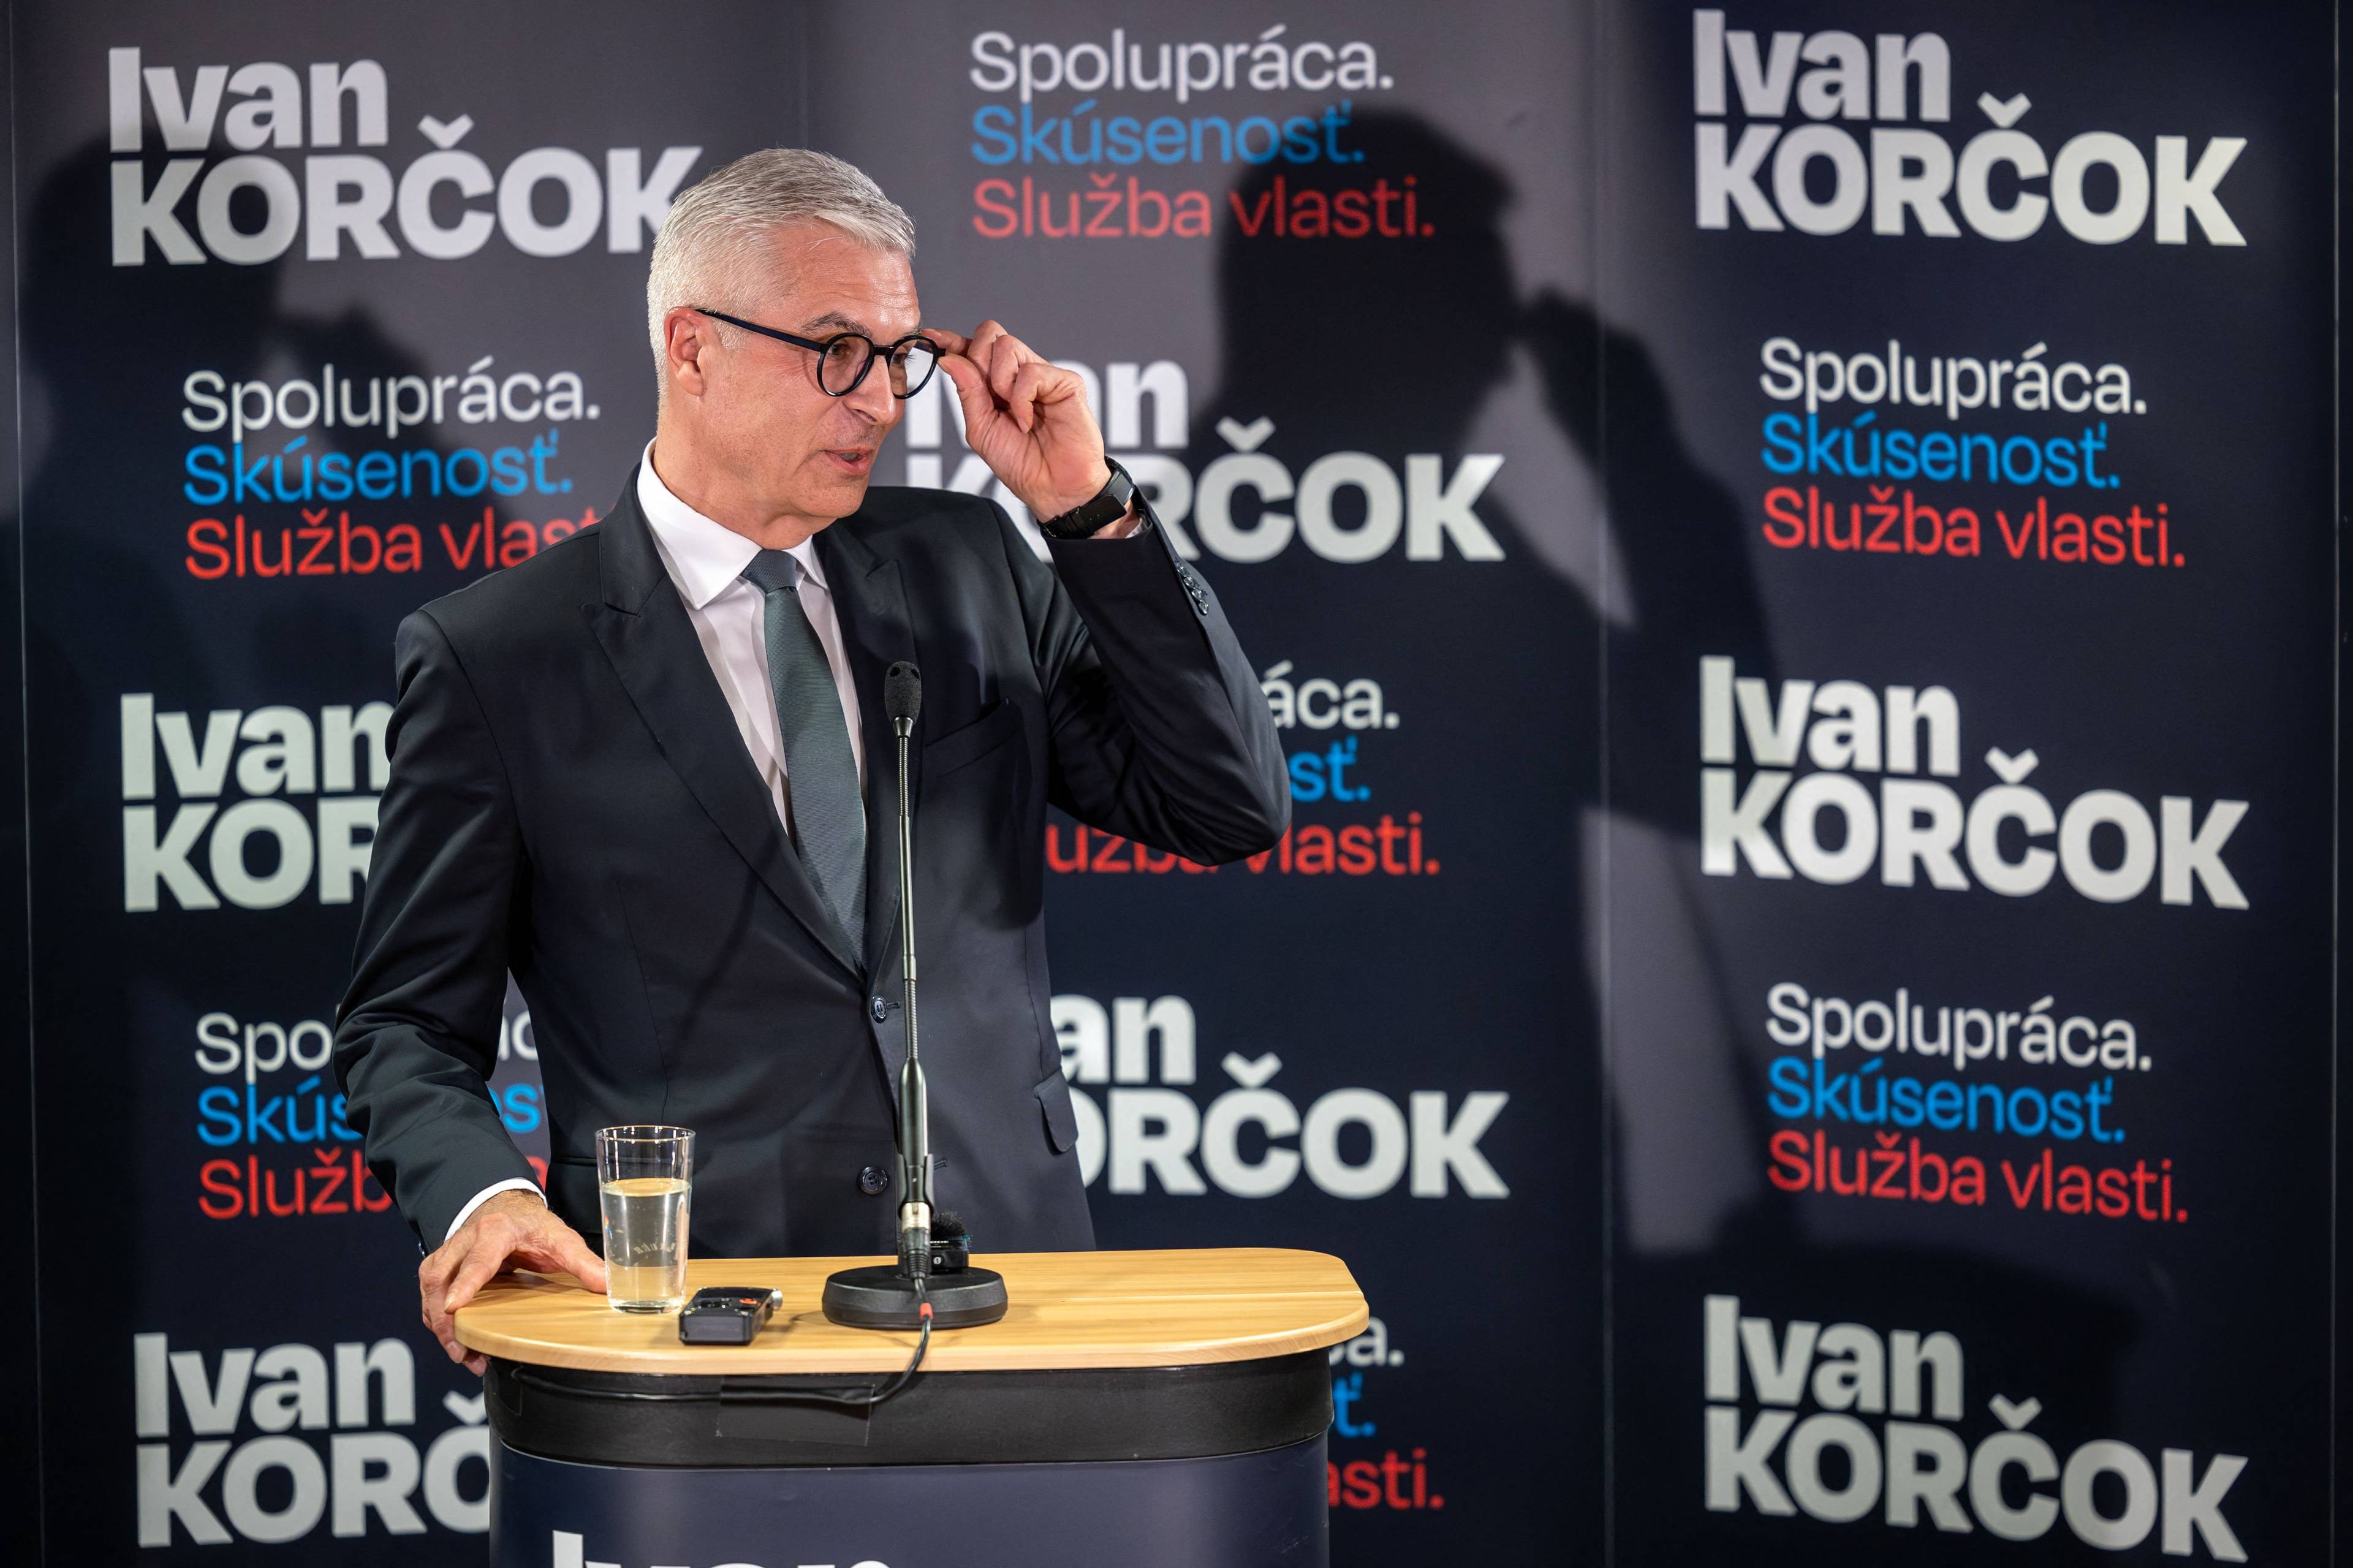 Męzczyzna przemawia na tle plakatów wyborczych z nazwiskiem "Ivan Korcok"